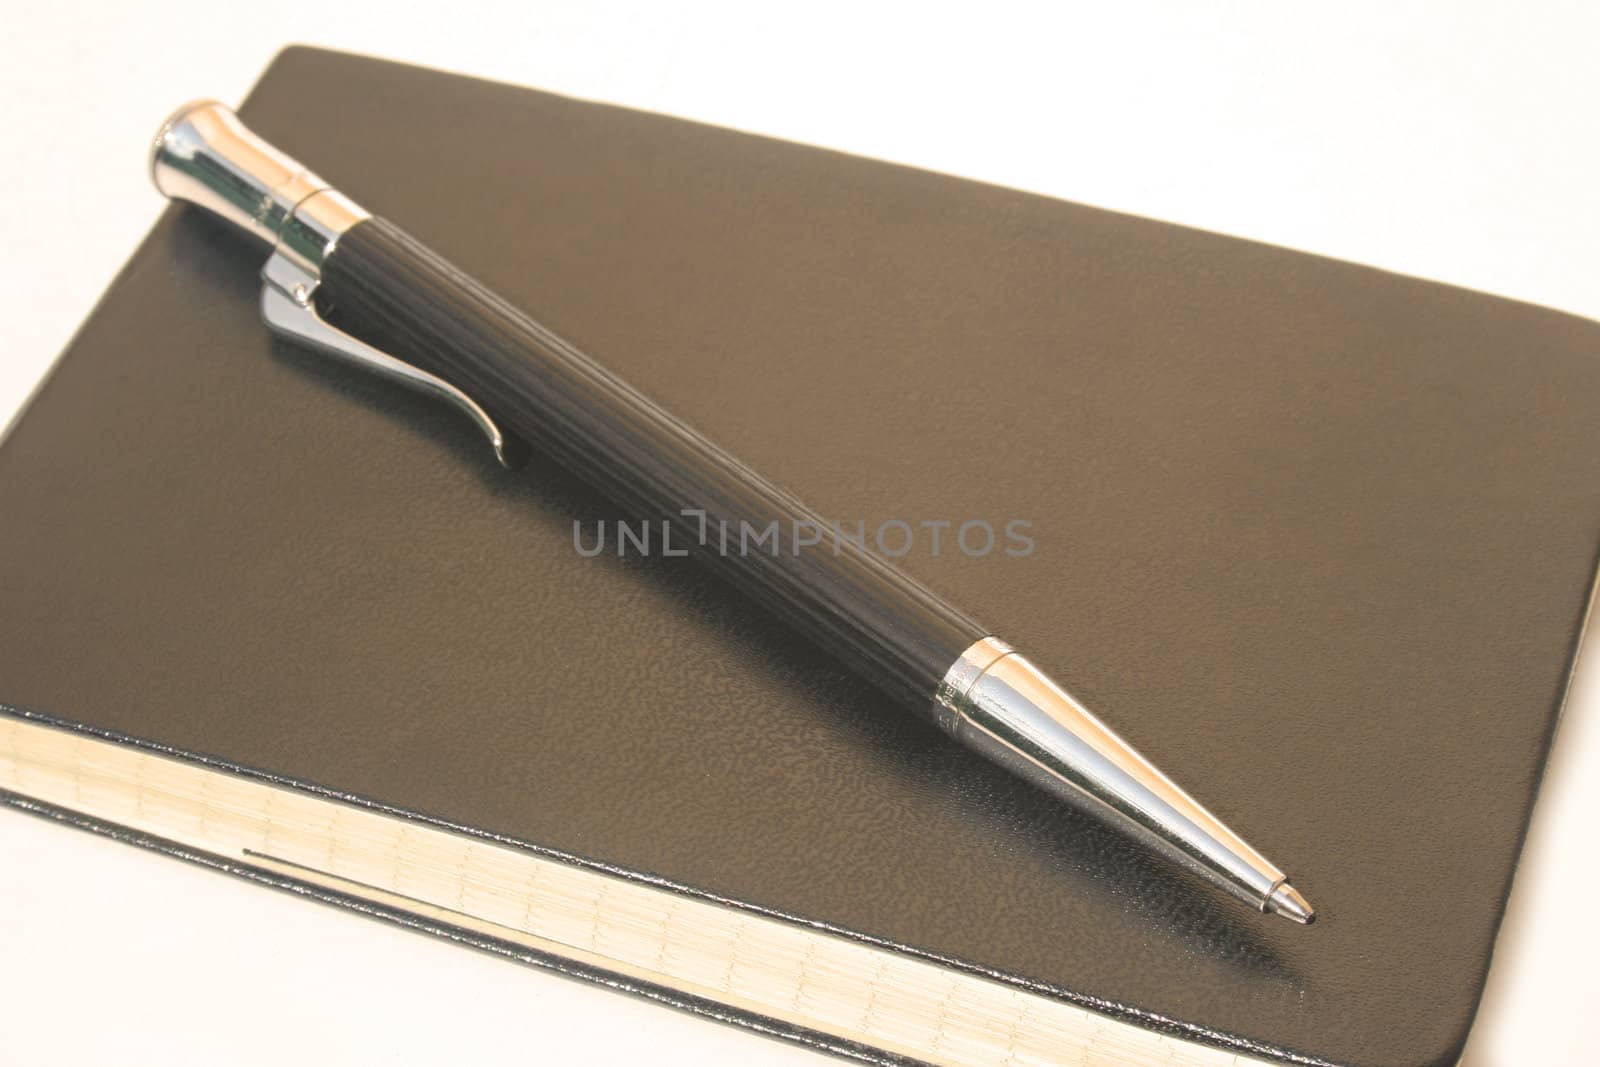 Ballpoint pen on rectangular leather notepad